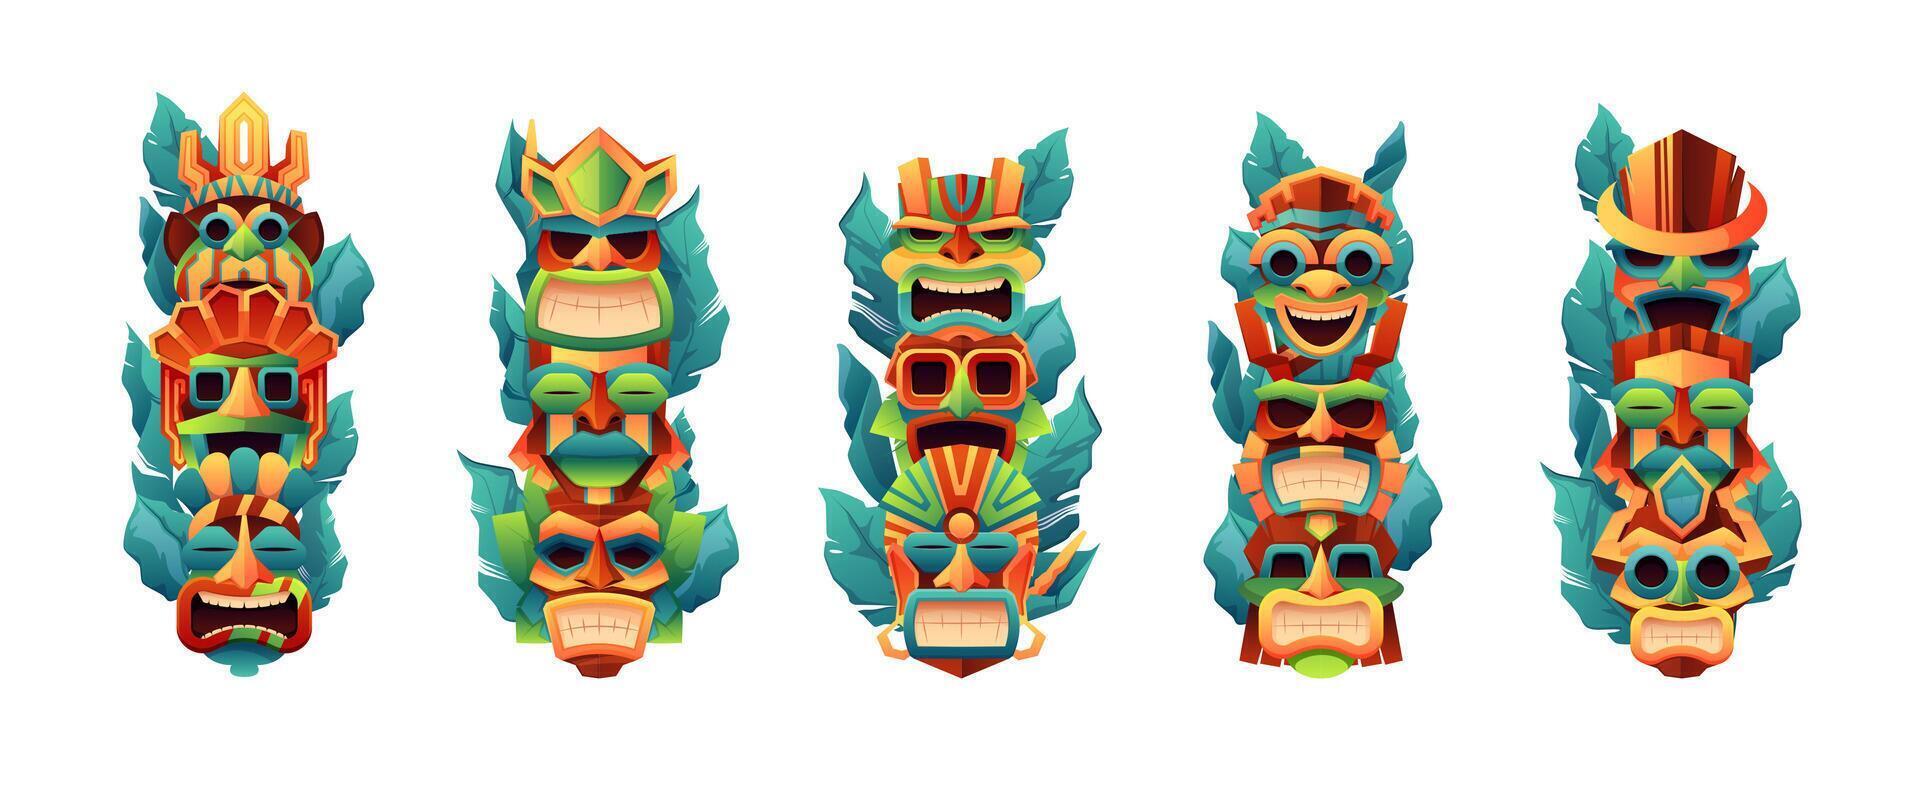 Tiki Totems. traditionell Primitive einheimisch Stammes- Gesicht Masken, Mexikaner polynesisch aztekisch einheimisch Stamm Ritual Idole, Karikatur ethnisch Kunst Symbole. Vektor einstellen